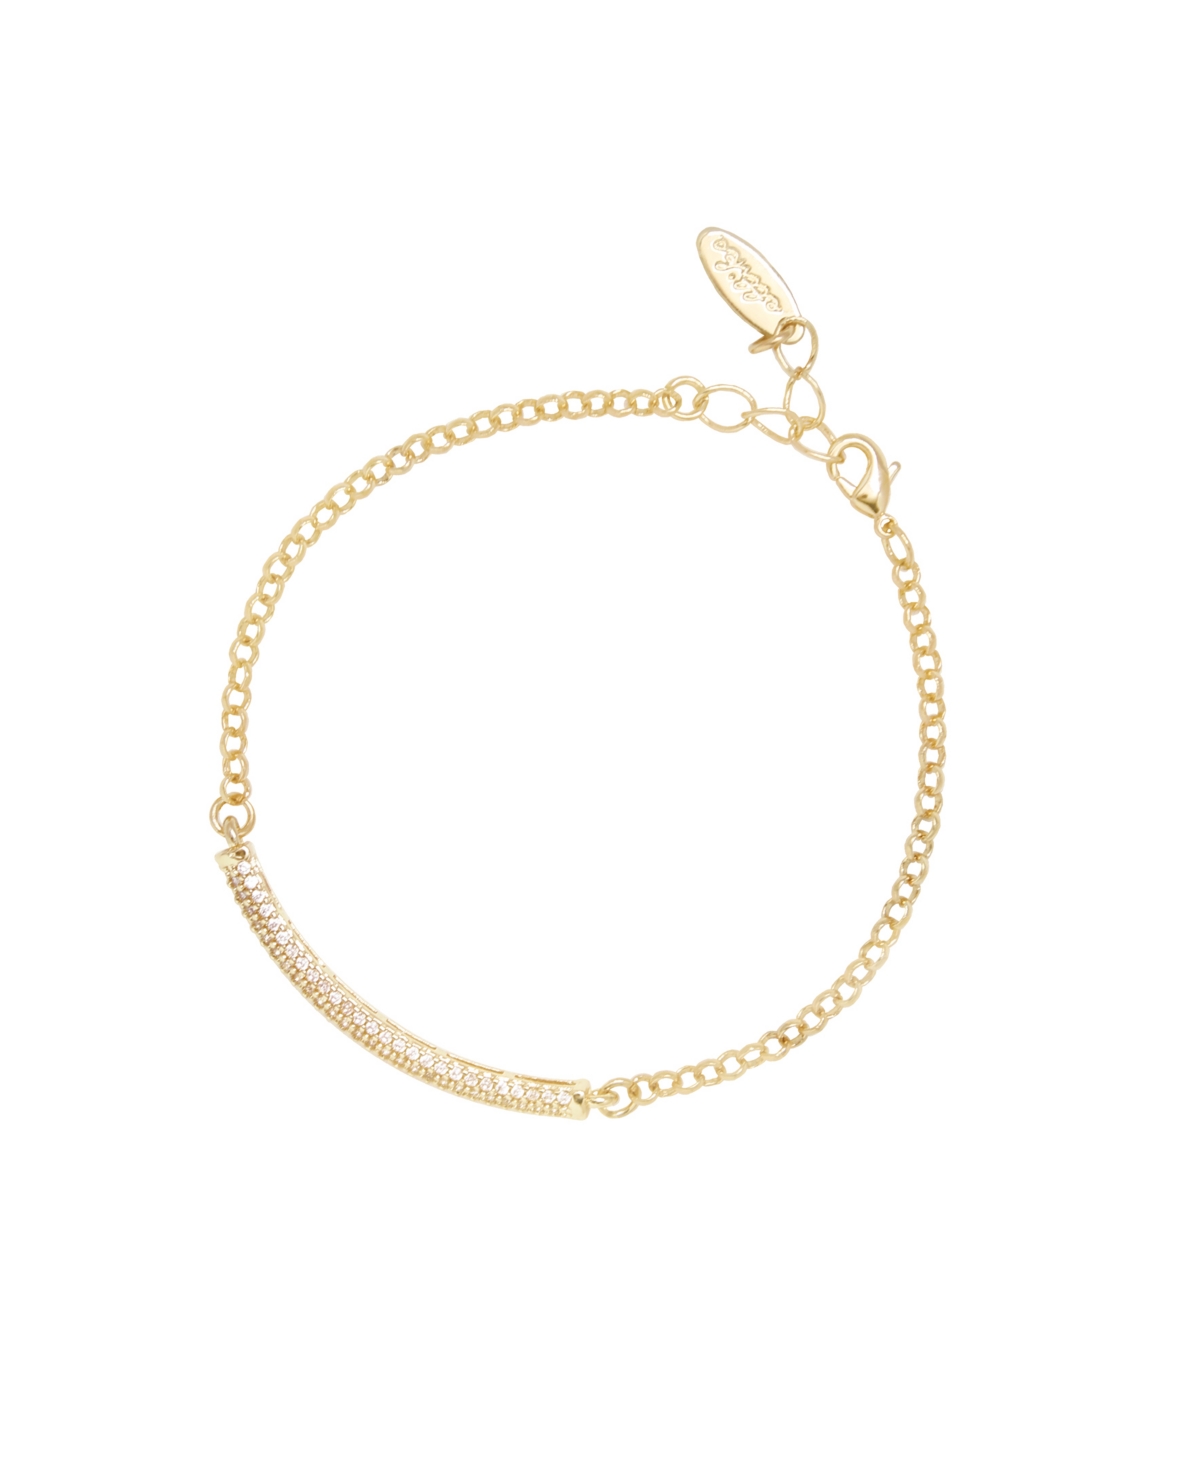 Subtle Statements Women's Bracelet - Gold